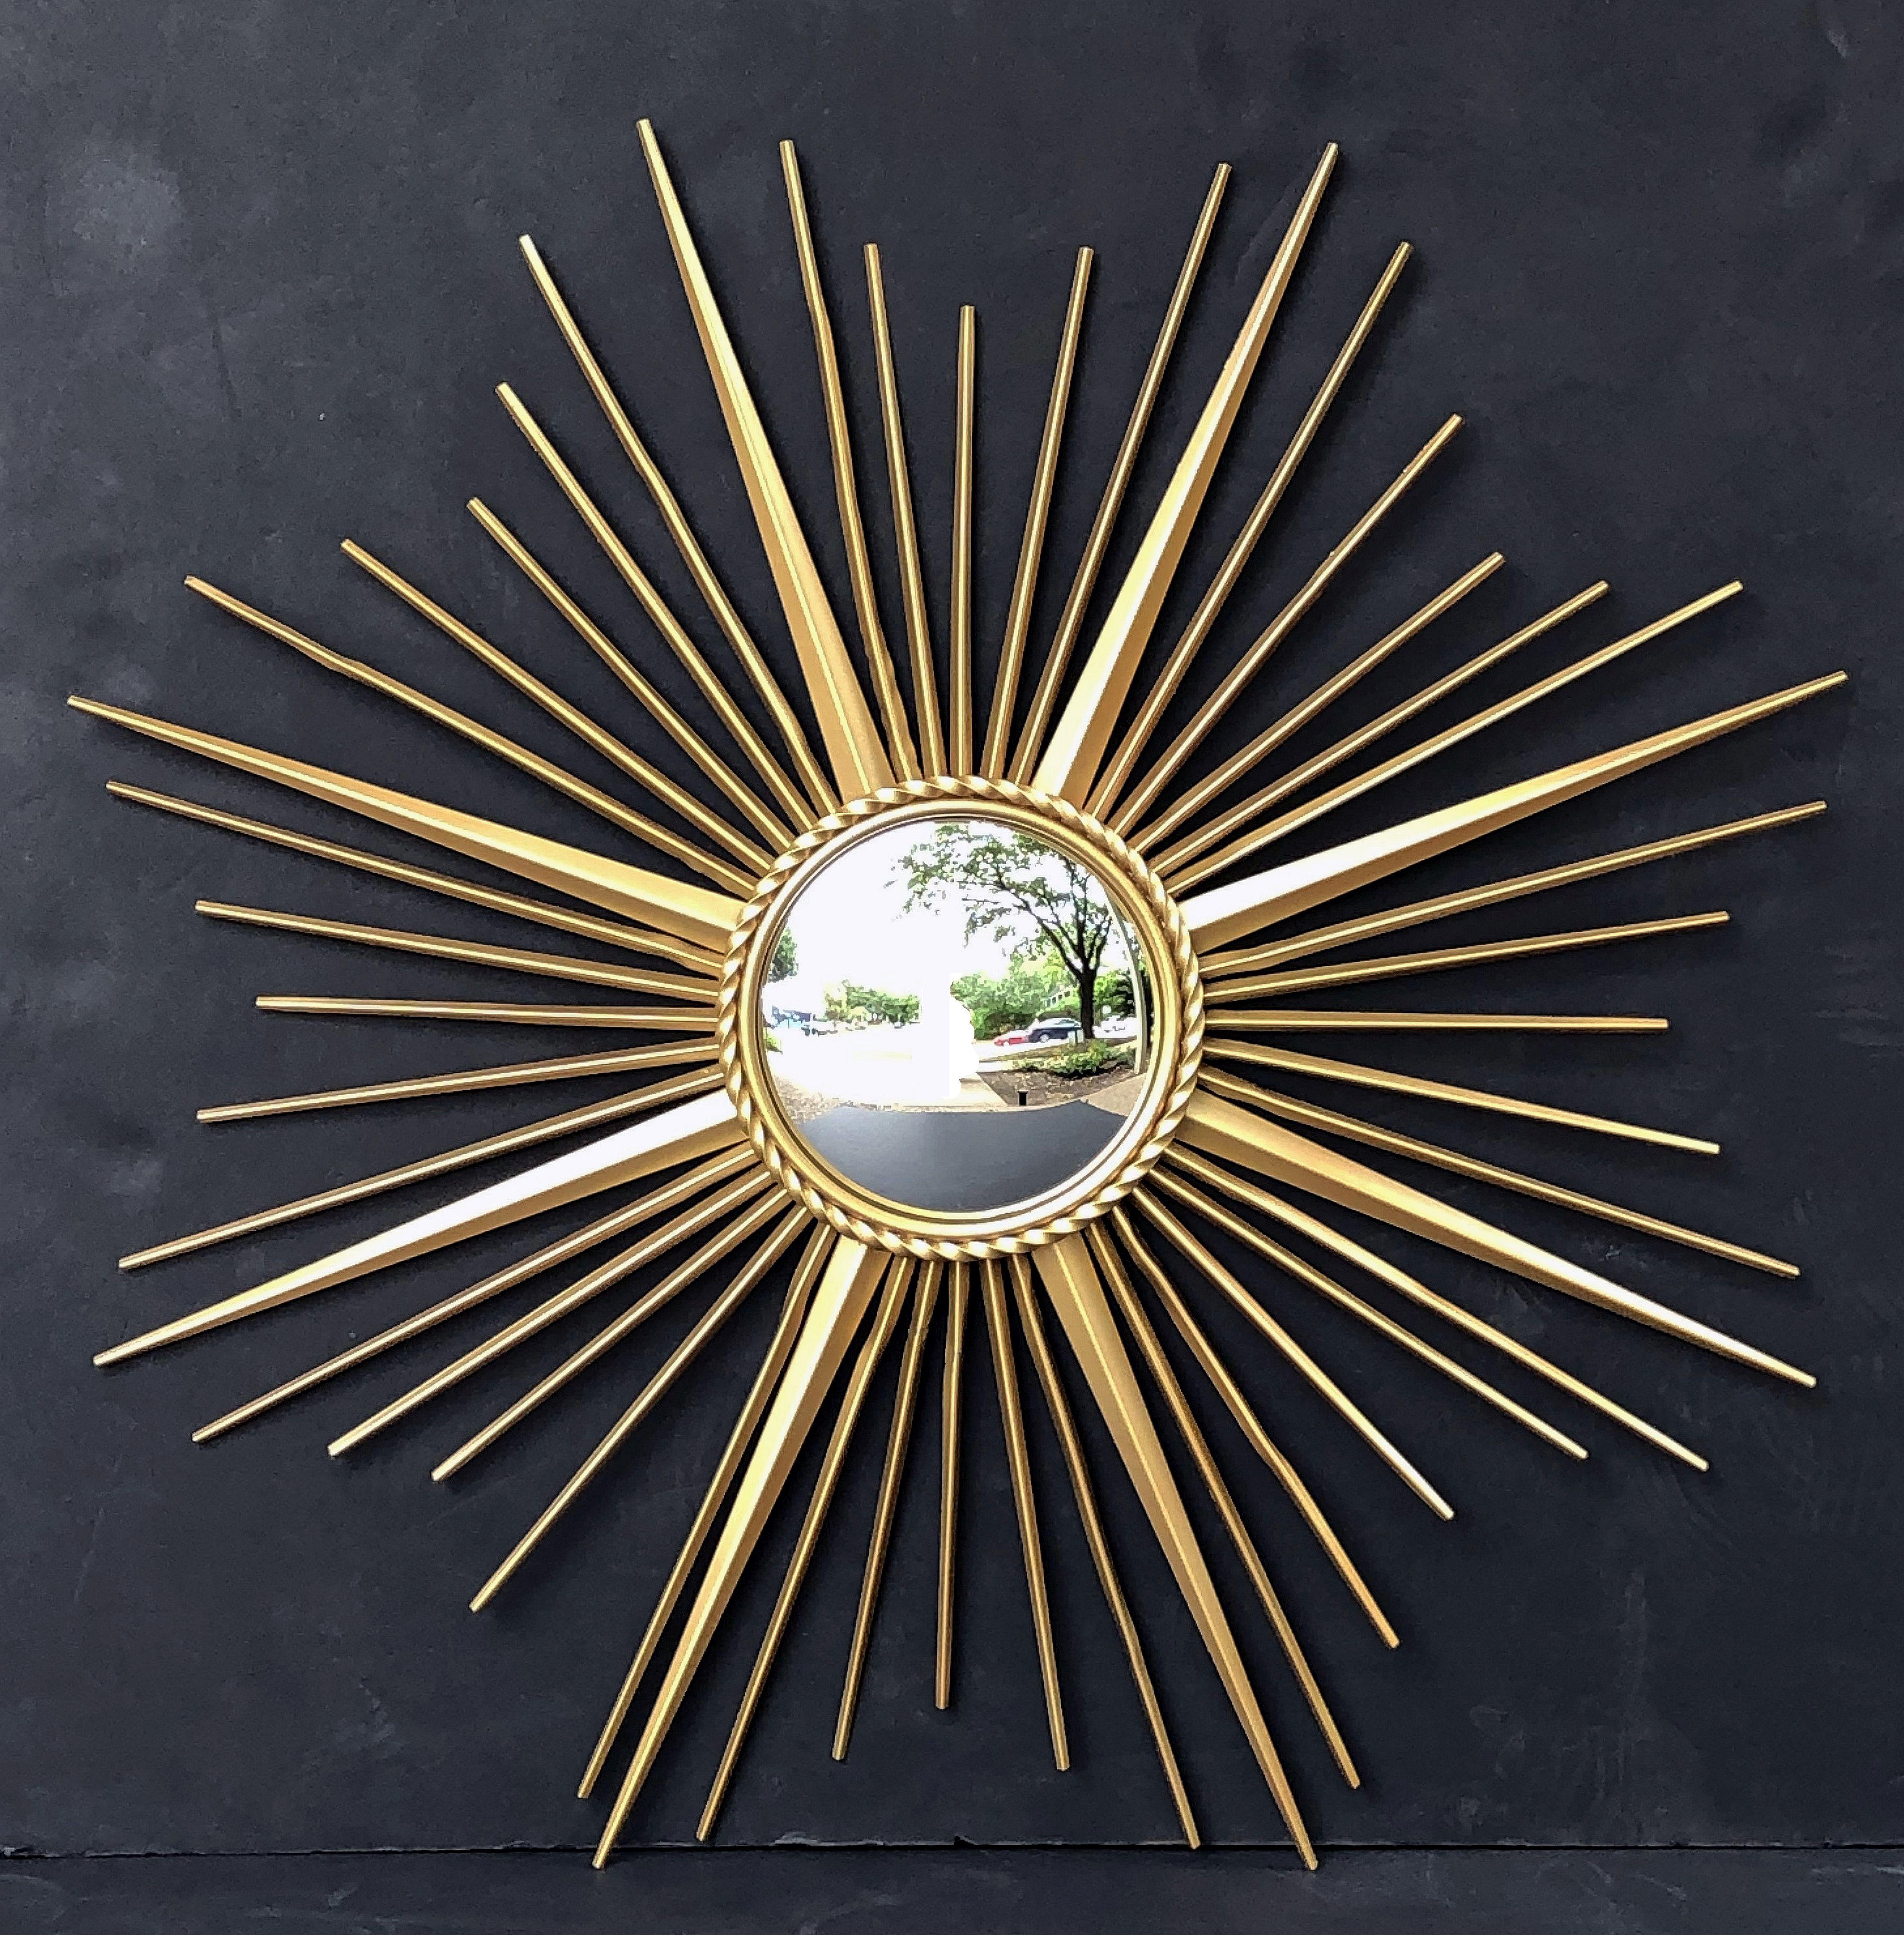 Eine feine Französisch vergoldet Metall sunburst (oder Starburst) Spiegel, 33 3/4 Zoll Durchmesser, mit konvexen verspiegelten Glas-Center in geformten Rahmen mit Seil-Motiv trimmen von Chaty Vallauris.

Mit eingeprägter Herstellermarke auf der